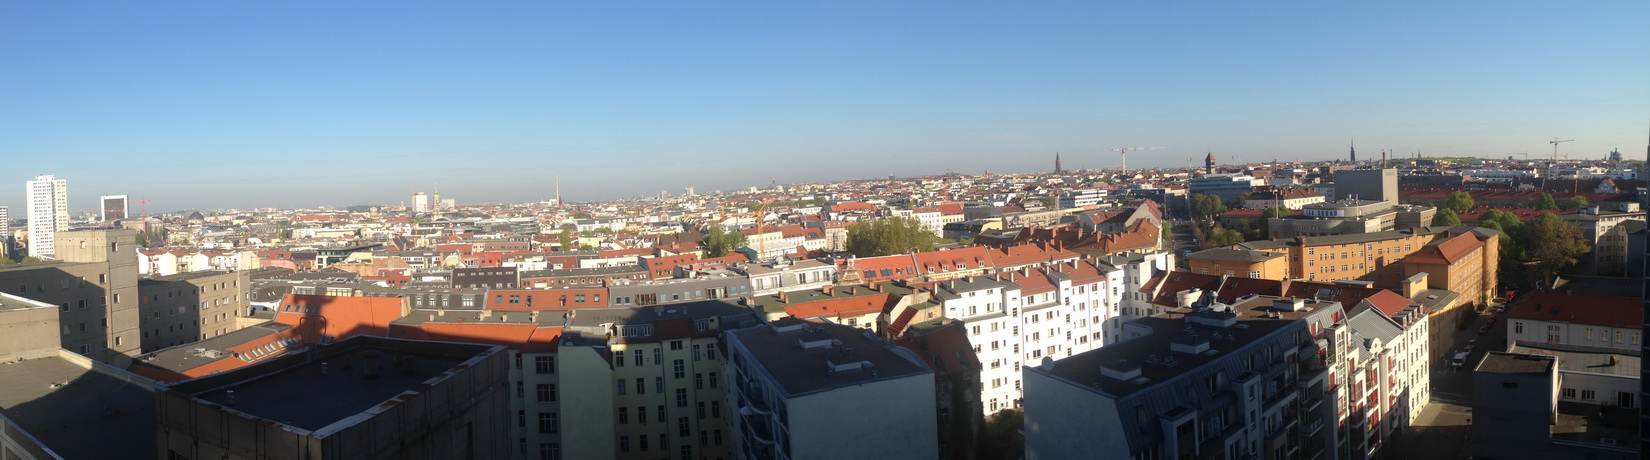 Über den Dächern von Berlin - EuroConsults